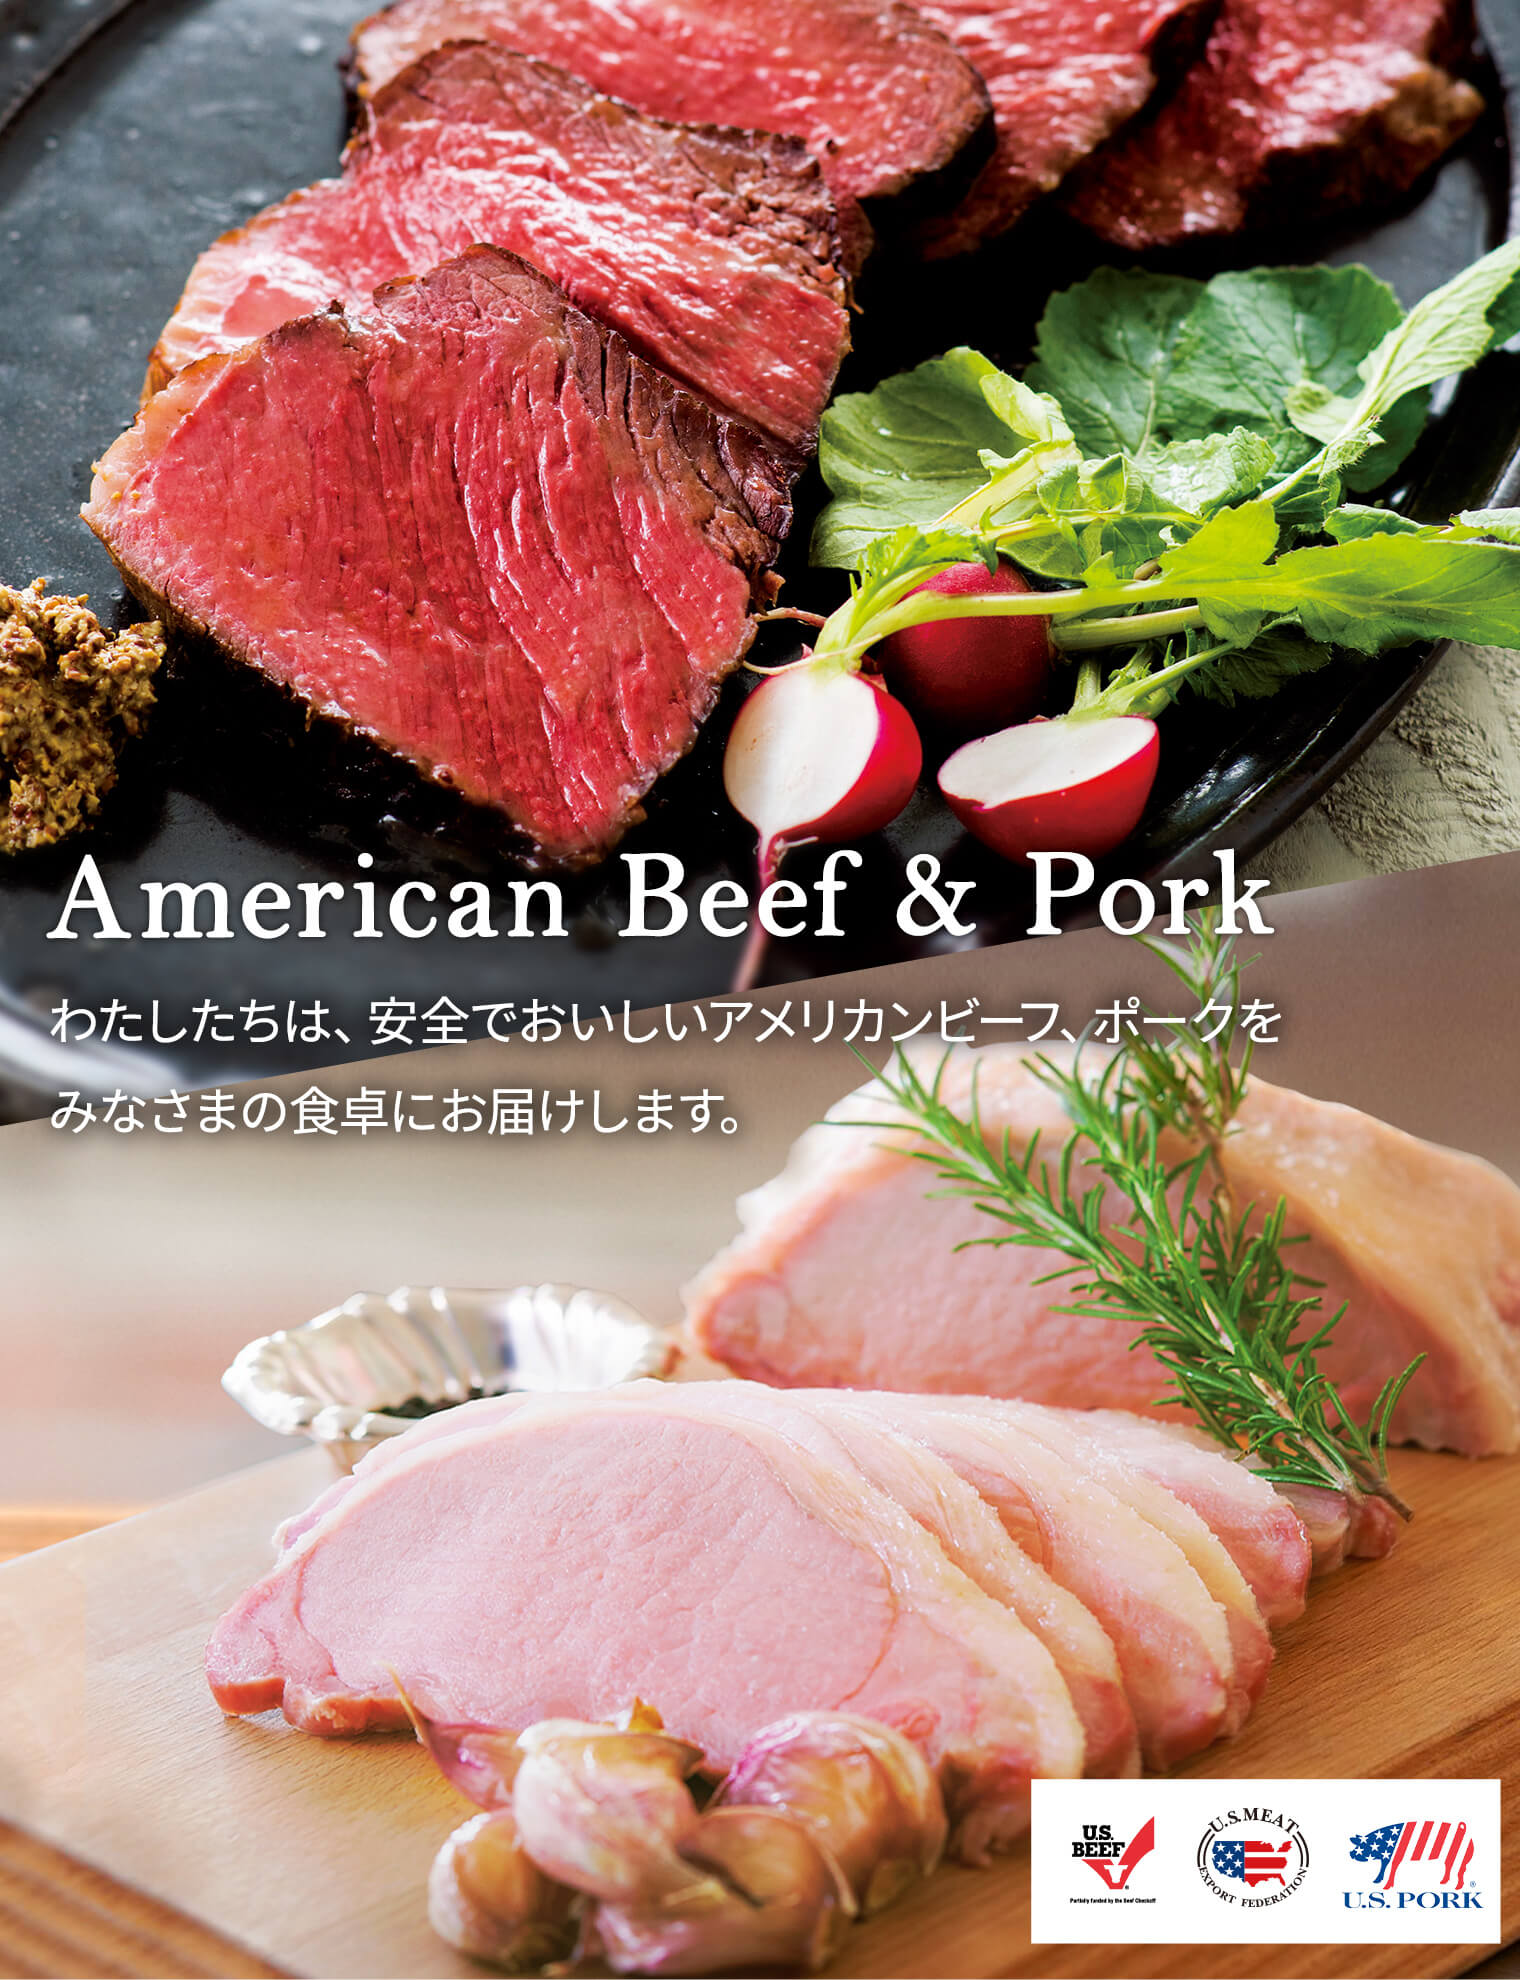 American Beef & Pork わたしたちは、安全でおいしいアメリカンビーフ、ポークを
みなさまの食卓にお届けします。